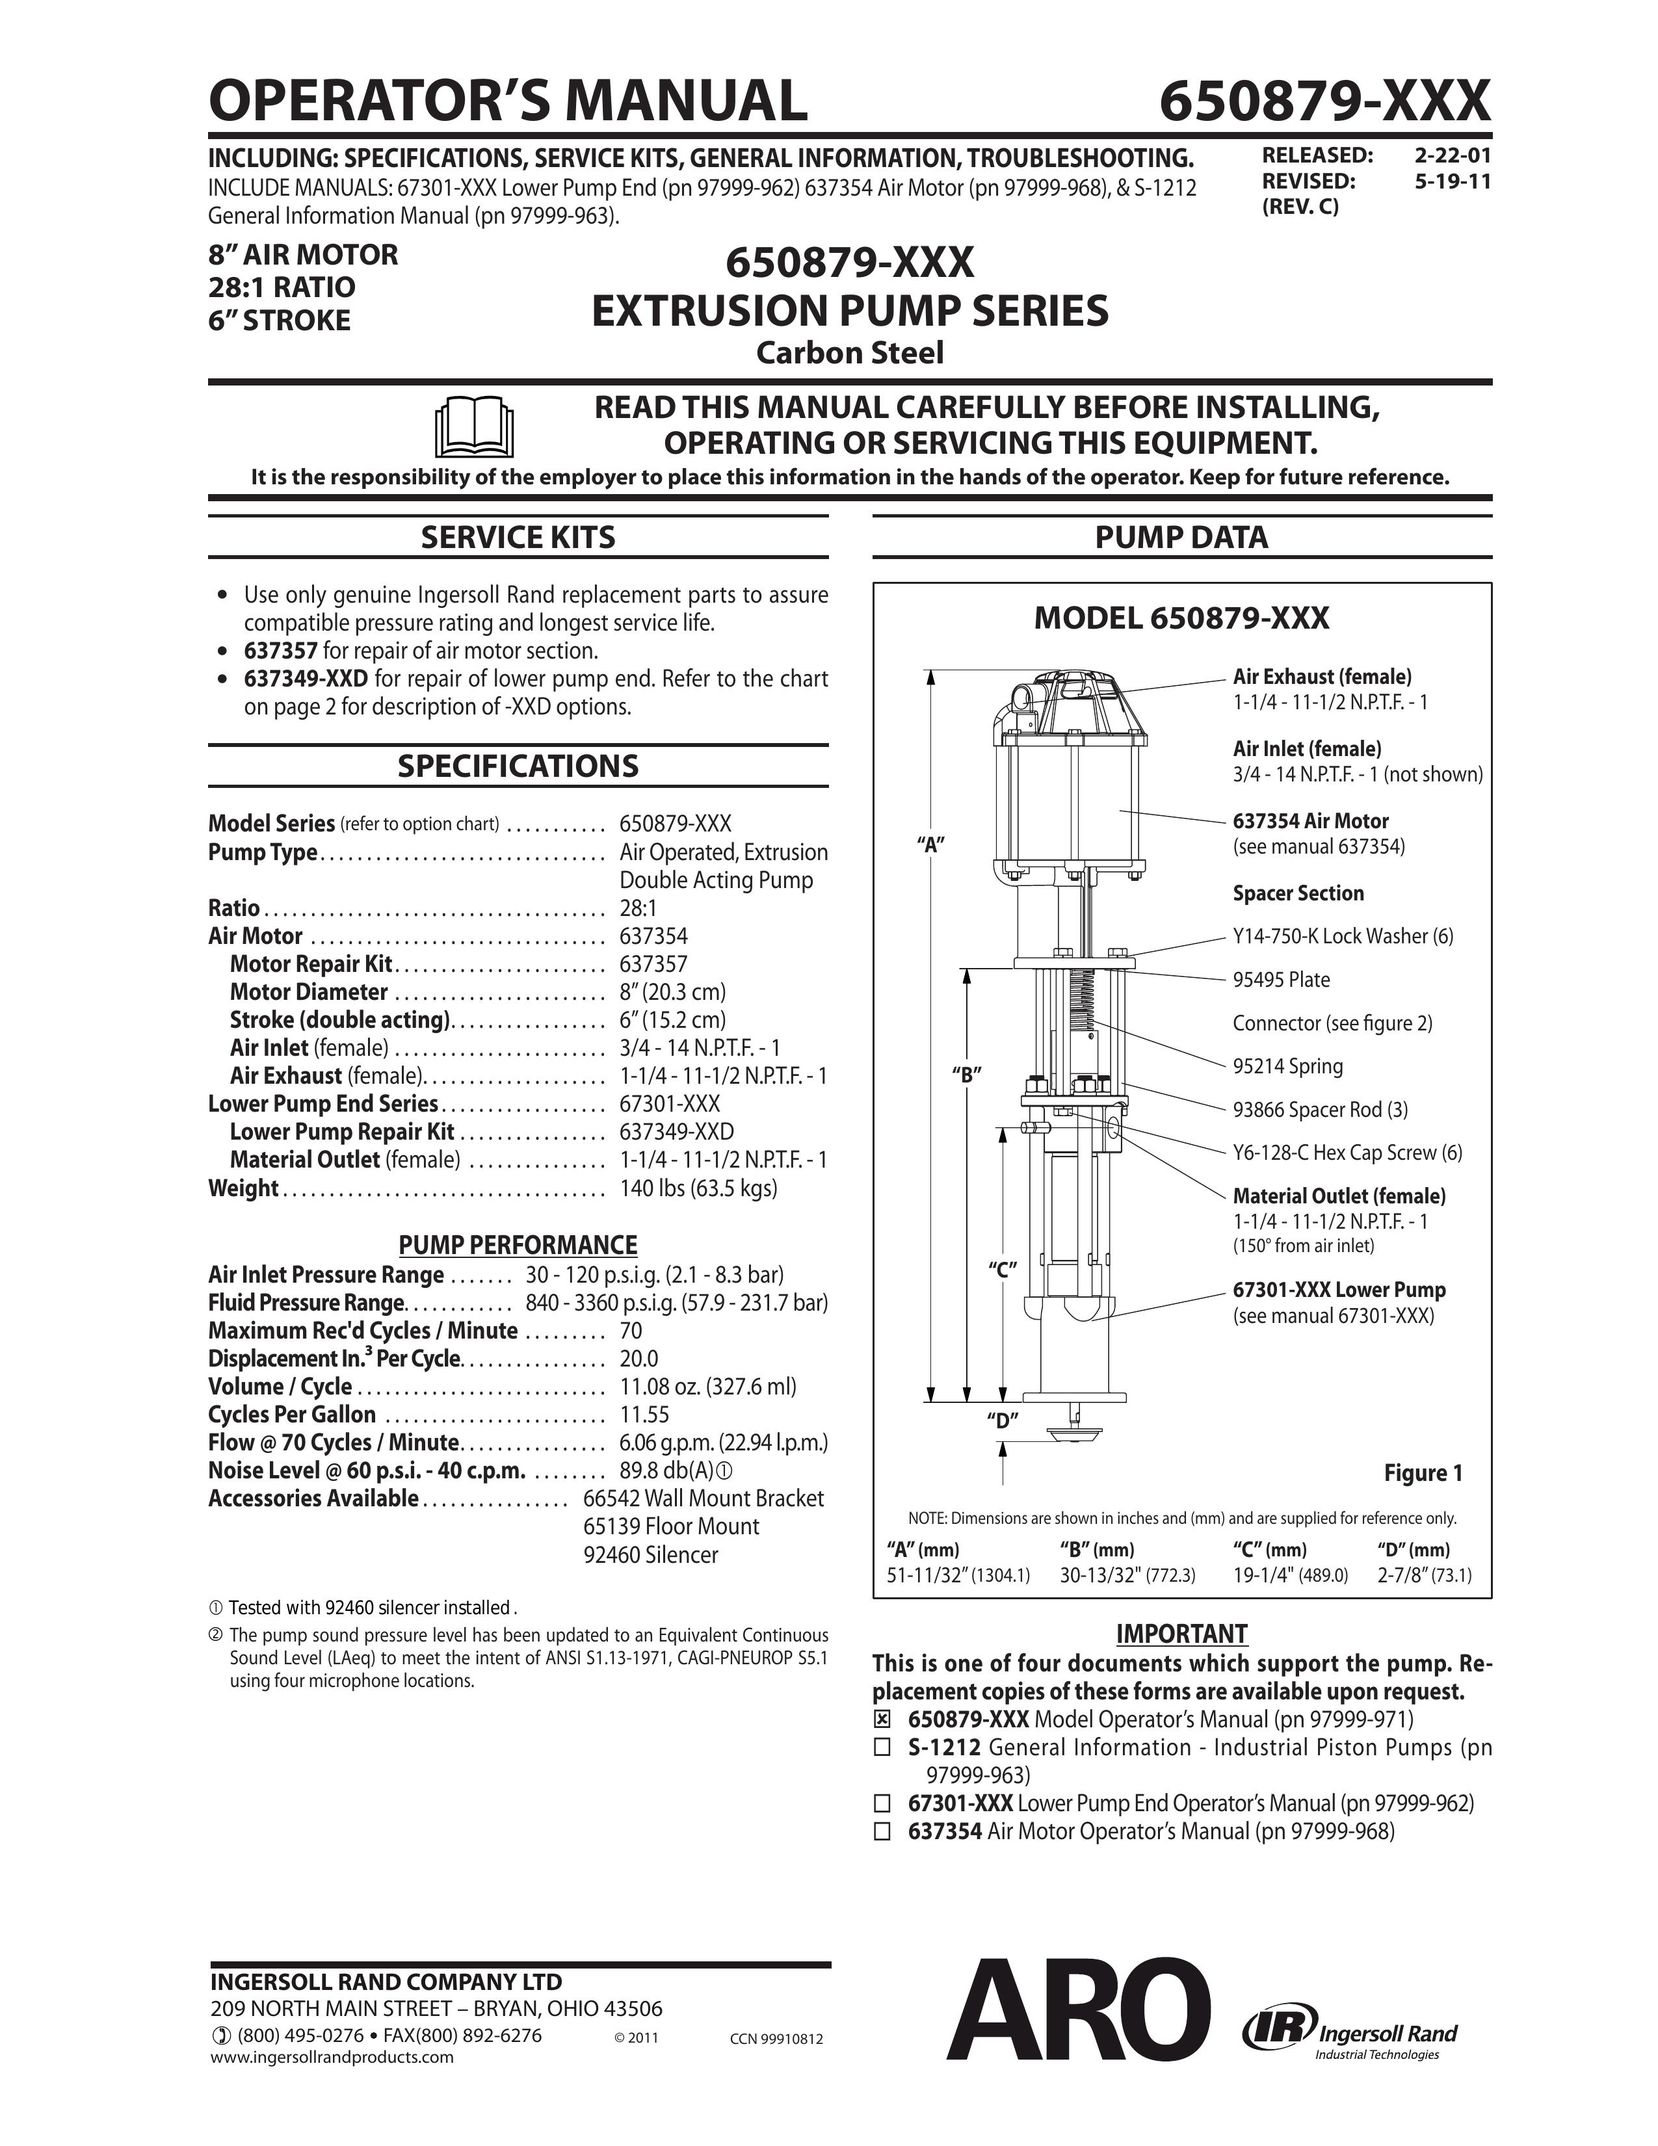 Ingersoll-Rand 650879-XXX Heat Pump User Manual